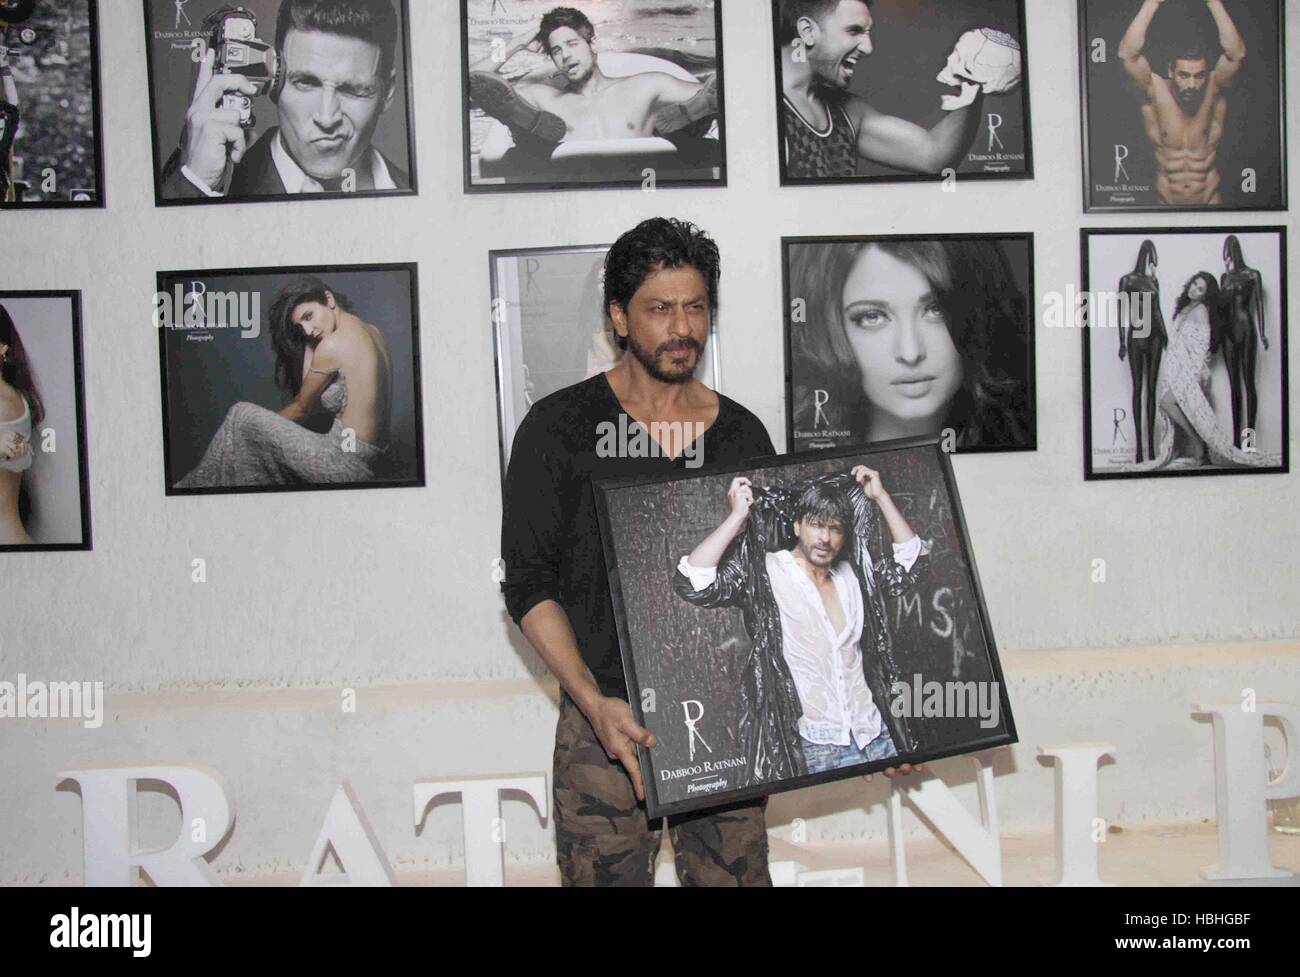 Shah Rukh Khan, acteur indien de Bollywood avec son imprimé encadré du calendrier du photographe de mode Dabboo Ratnani à Mumbai, Inde Banque D'Images